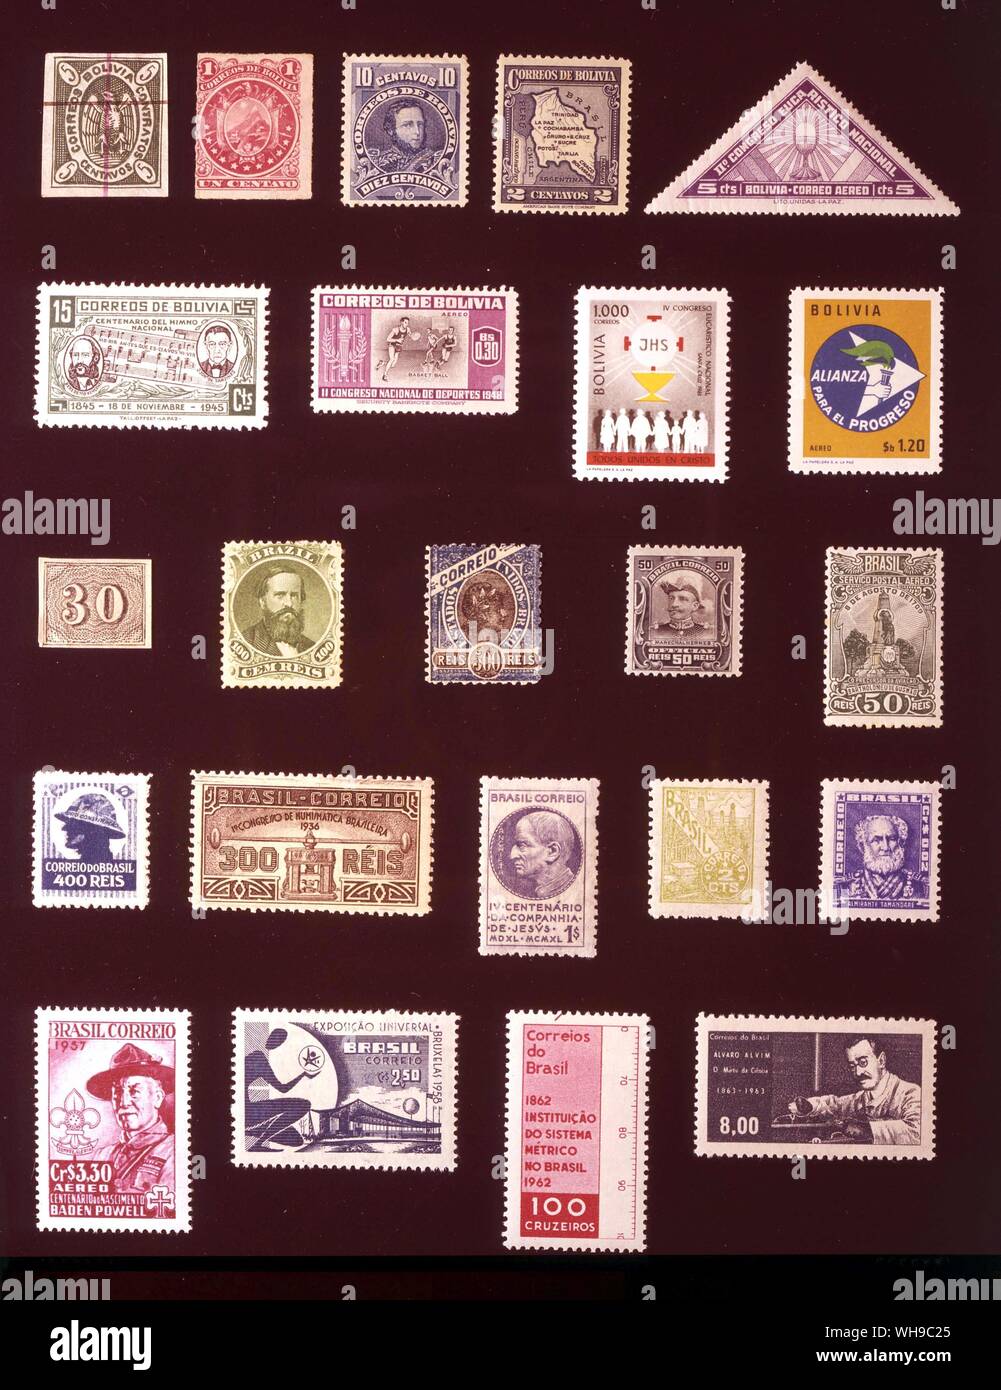 Amerika - Bolivien und Brasilien: (von links nach rechts) 1. Bolivien, 5 Centavos 1866, 2. Bolivien, 1 Imagen, 1887, 3. Bolivien, 10 Centavos, 1904, 4. Bolivien, 2 Centavos, 1935, 5. Bolivien, 5 Centavos 1939, 6. Bolivien, 15 Centavos, 1946, 7. Bolivien, 30 Centavos, 1951, 8. Bolivien, 1000 Bolivianos, 1962, 9. Bolivien, 1,20 Pesos, 1963, 10. Brasilien, 30 Reis, 1850 11. Brasilien 100 Reis 1866, 12. Brasilien 500 Reis 1895, 13. Brasilien, 50 Reis, 1913, 14. Brasilien, 50 Reis, 1929, 15. Brasilien 400 Reis 1932, 16. Brasilien 300 Reis 1936, 17. Brasilien, 1 milreis 1941, 18. Brasilien, 2 Centavos, 1949, 19. Brasilien, 2 Centavos, Stockfoto